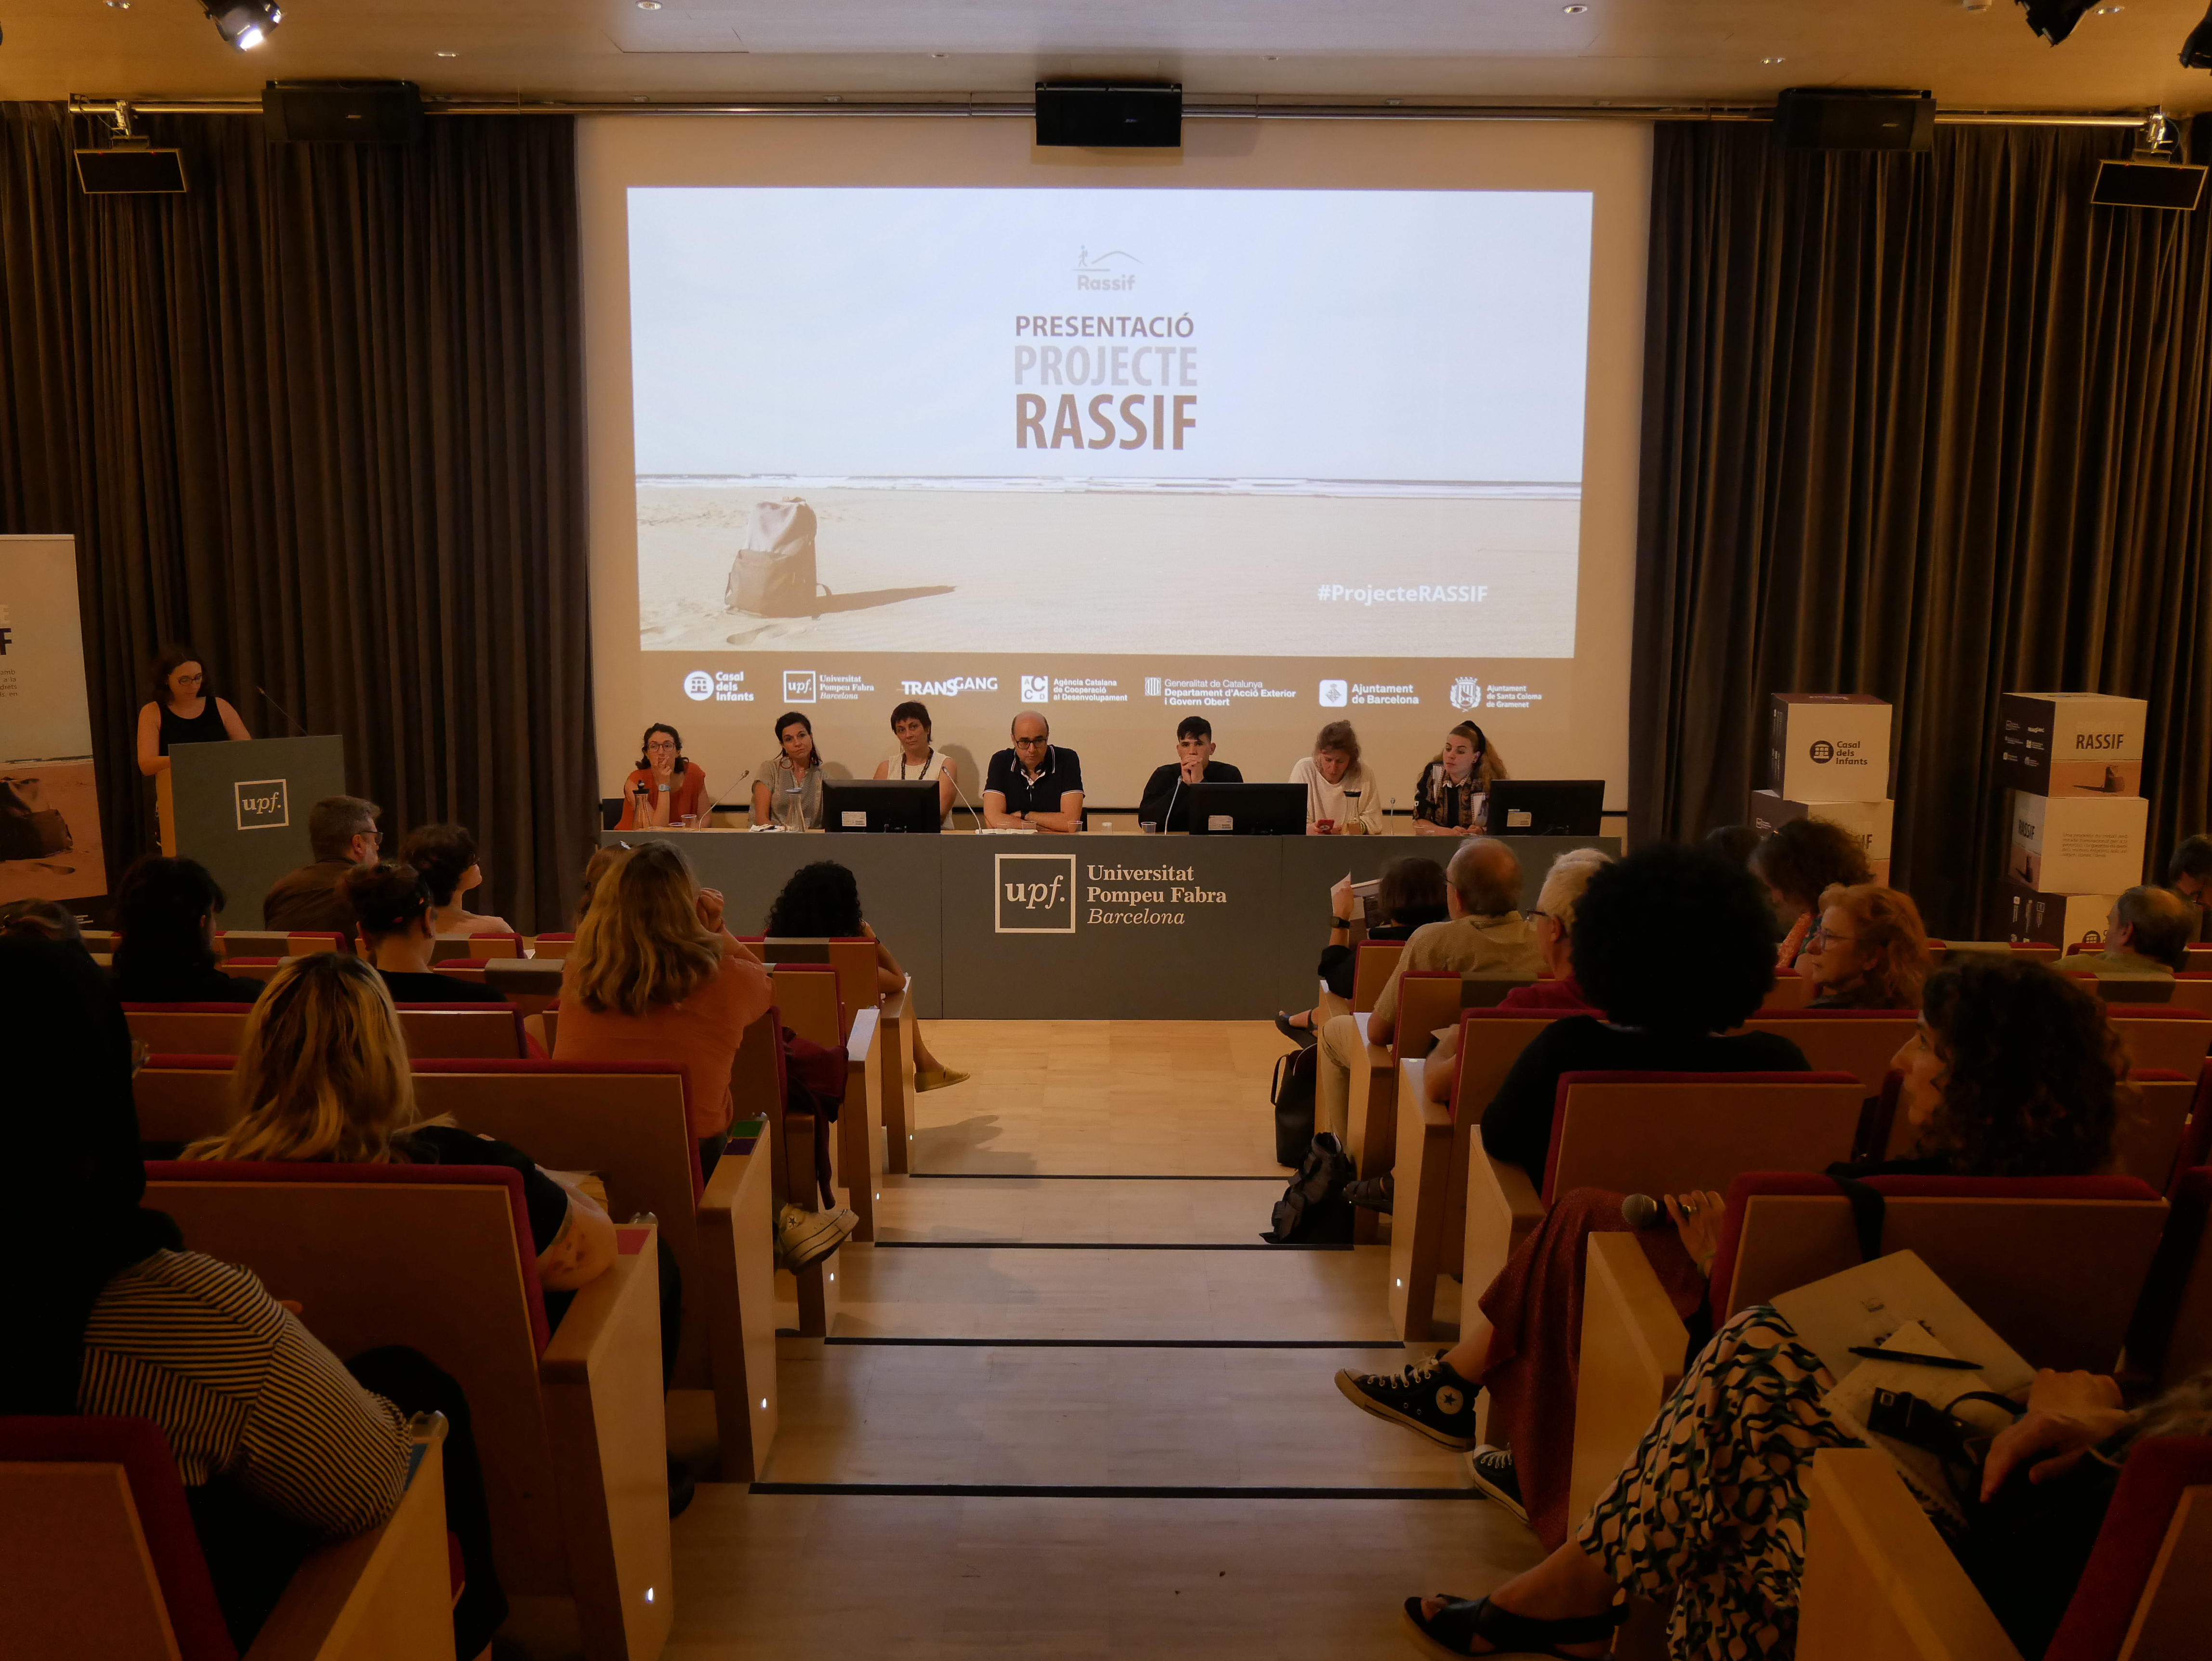 Presentació de Rassif a la Universitat Pompeu Fabra.